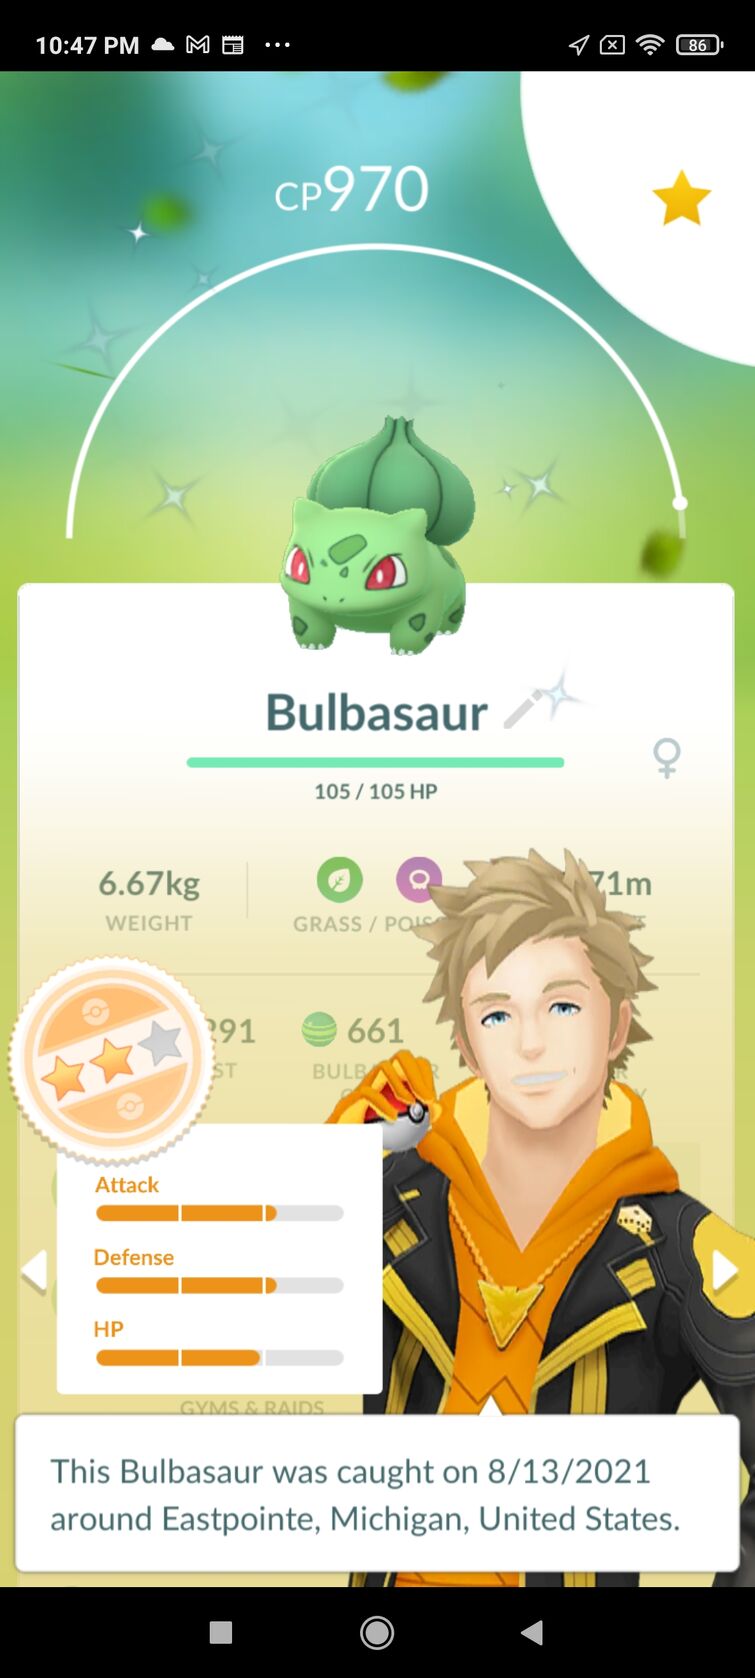 Shiny Bulbasaur via Pokemon Go Community Day!